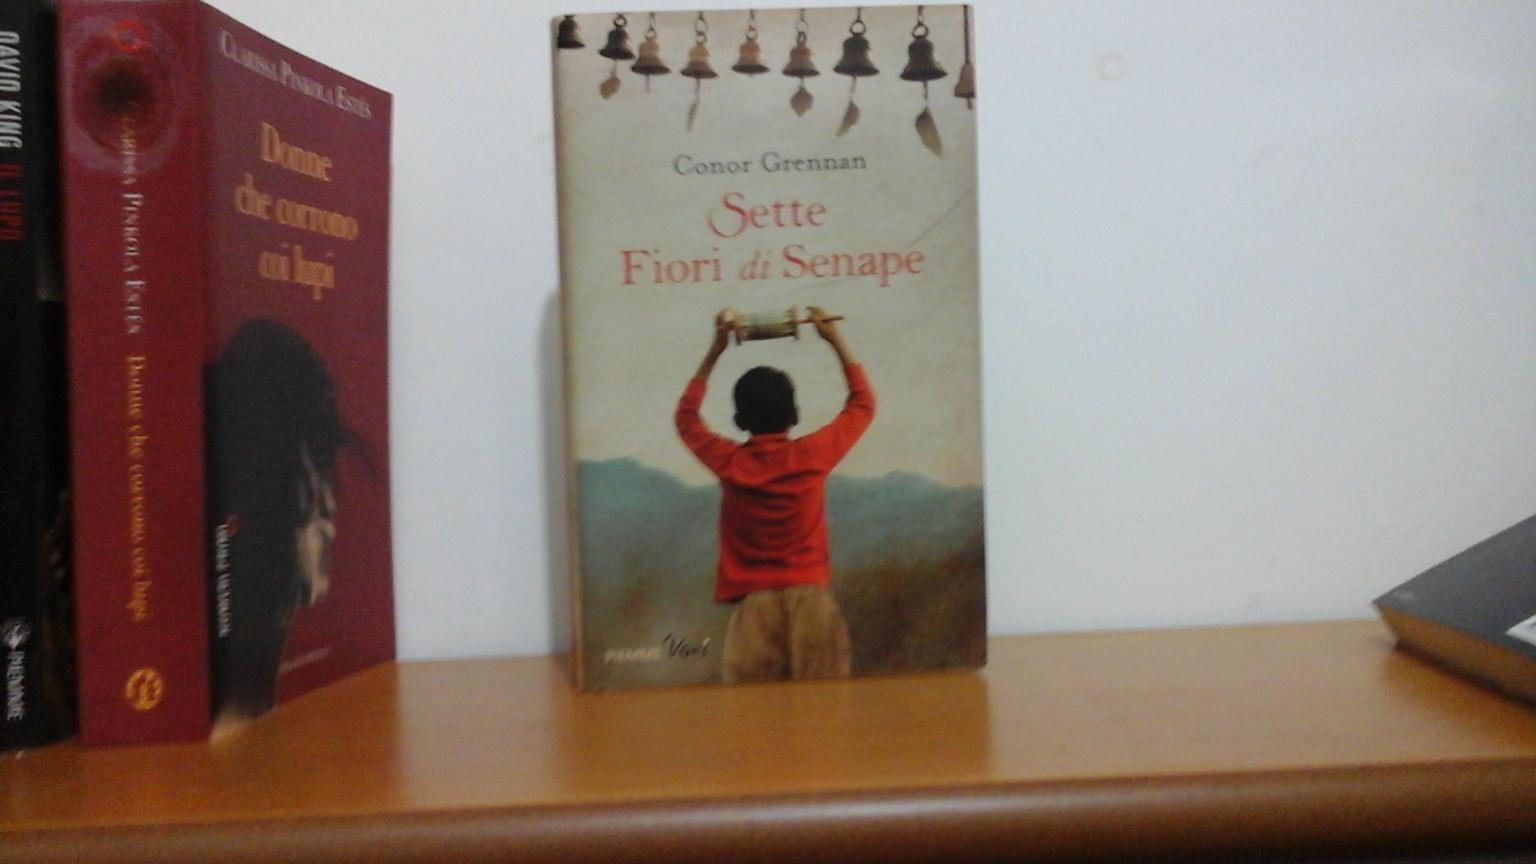 7 Fiori Di Senape.Libro Sette Fiori Di Senape In 08100 Nuoro Fur 8 00 Zum Verkauf